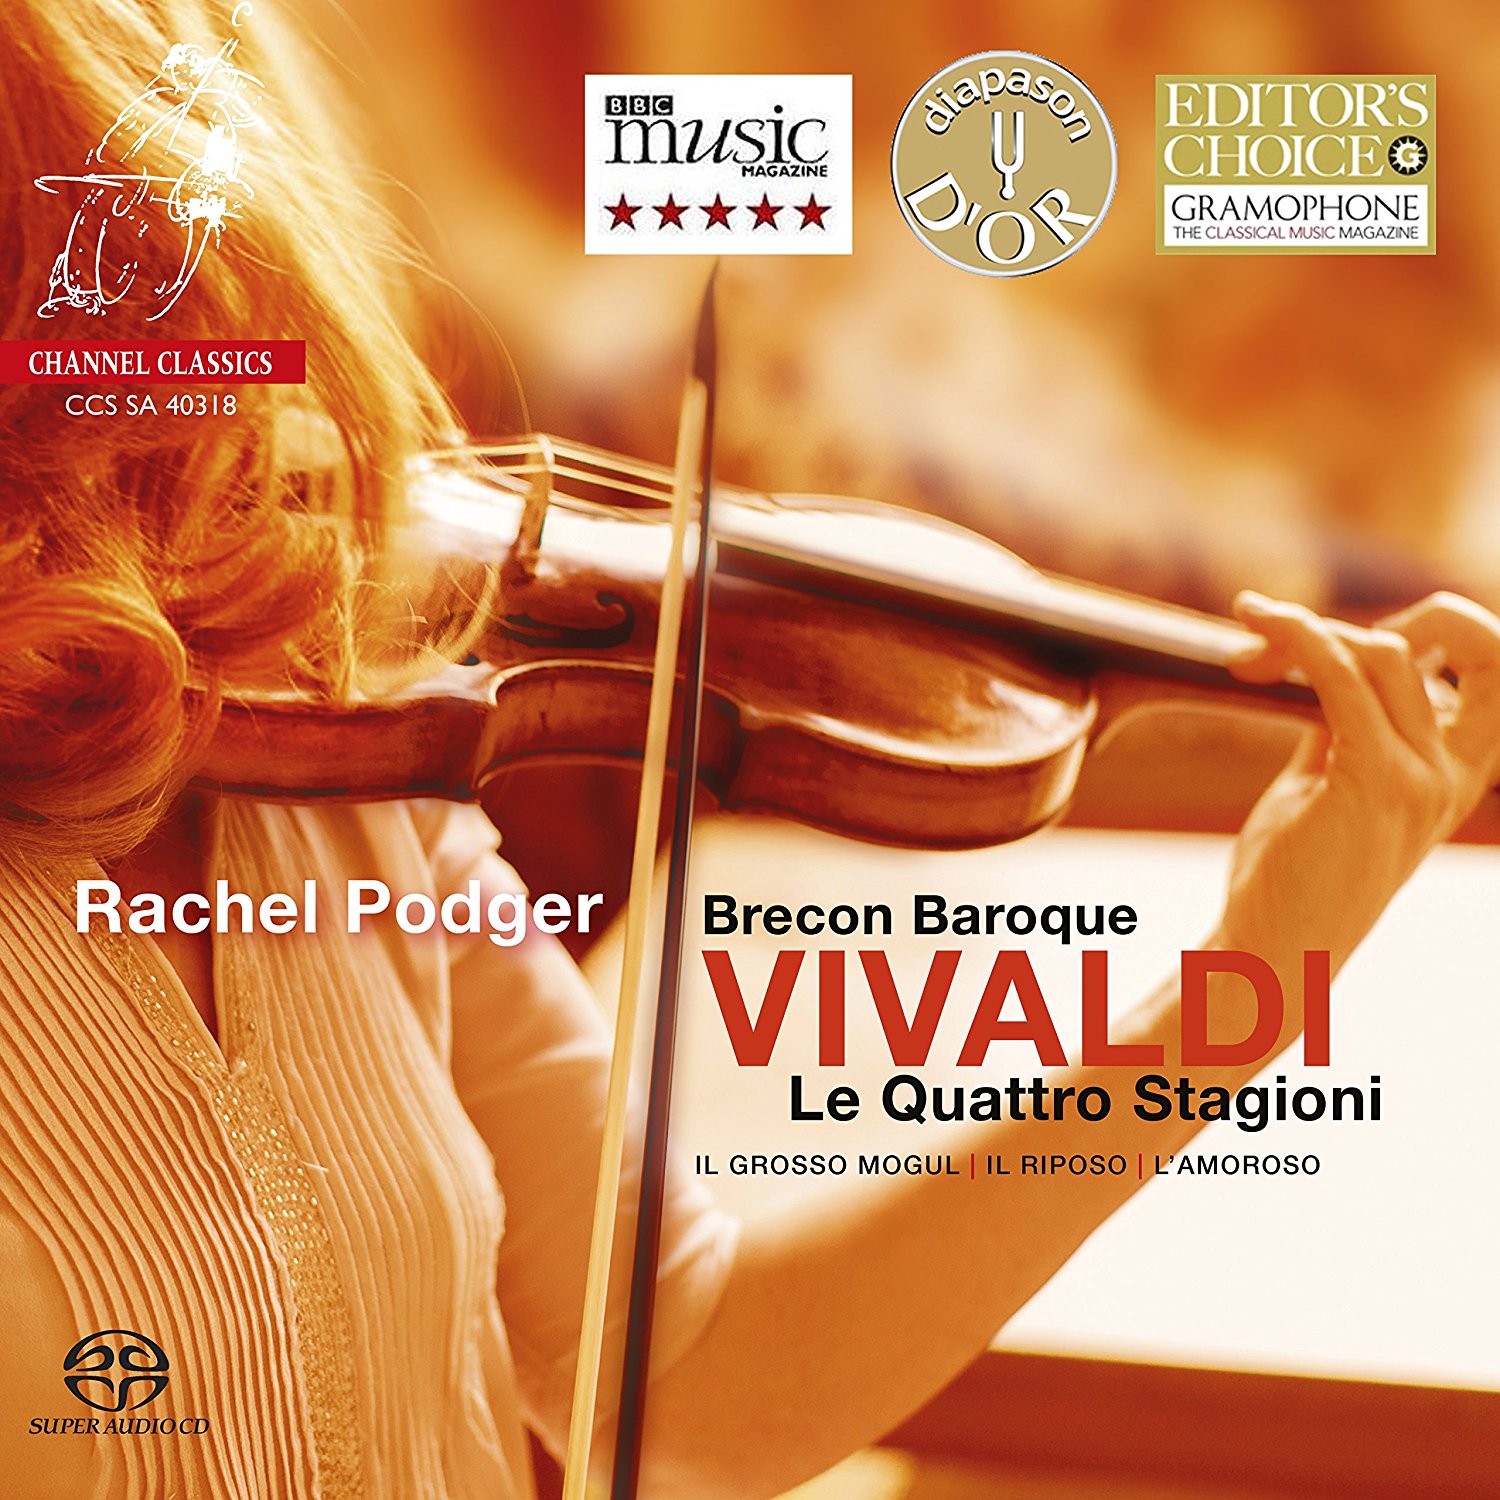 Vivaldi on Amazon